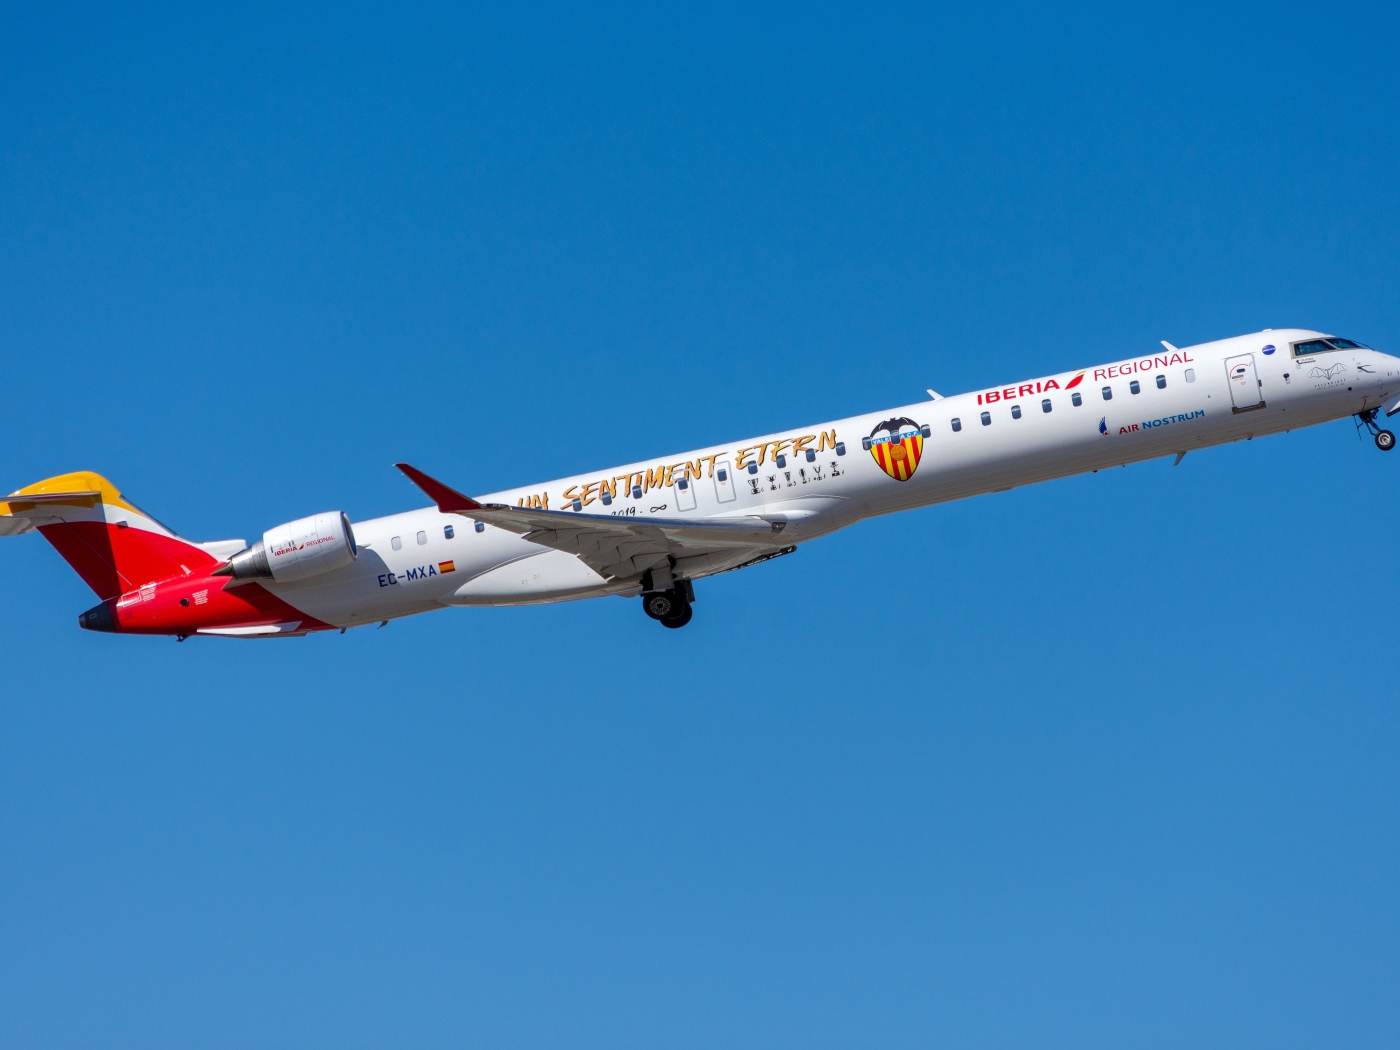 Самолет Bombardier CRJ-1000 авиакомпании Air Nostrum на фоне голубого неба